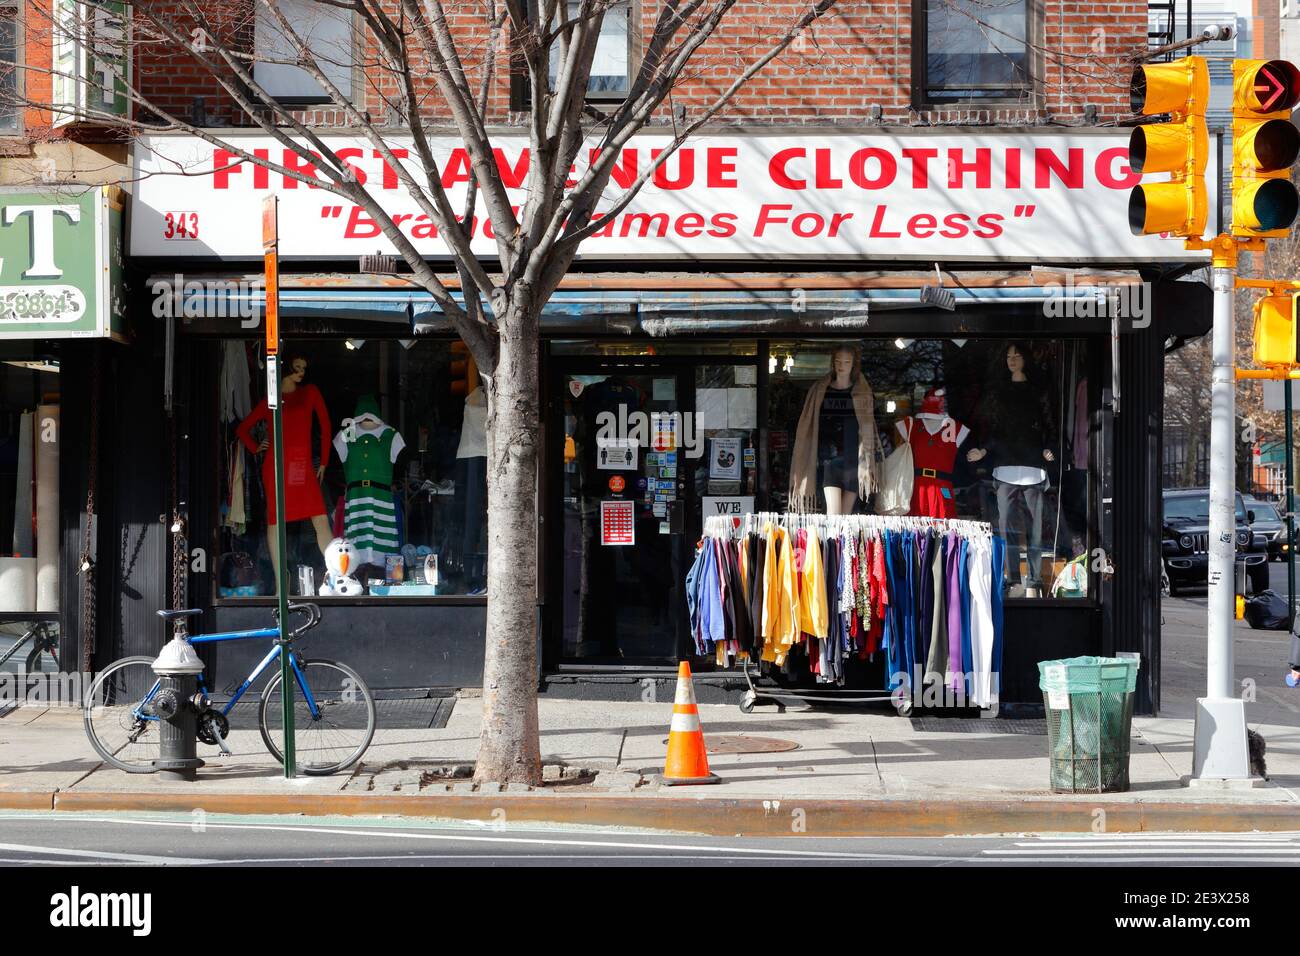 First Avenue Clothing, 343 First Ave, New York, NYC Foto von einem Bekleidungsgeschäft in Manhattans Stadtteil Gramercy. Stockfoto